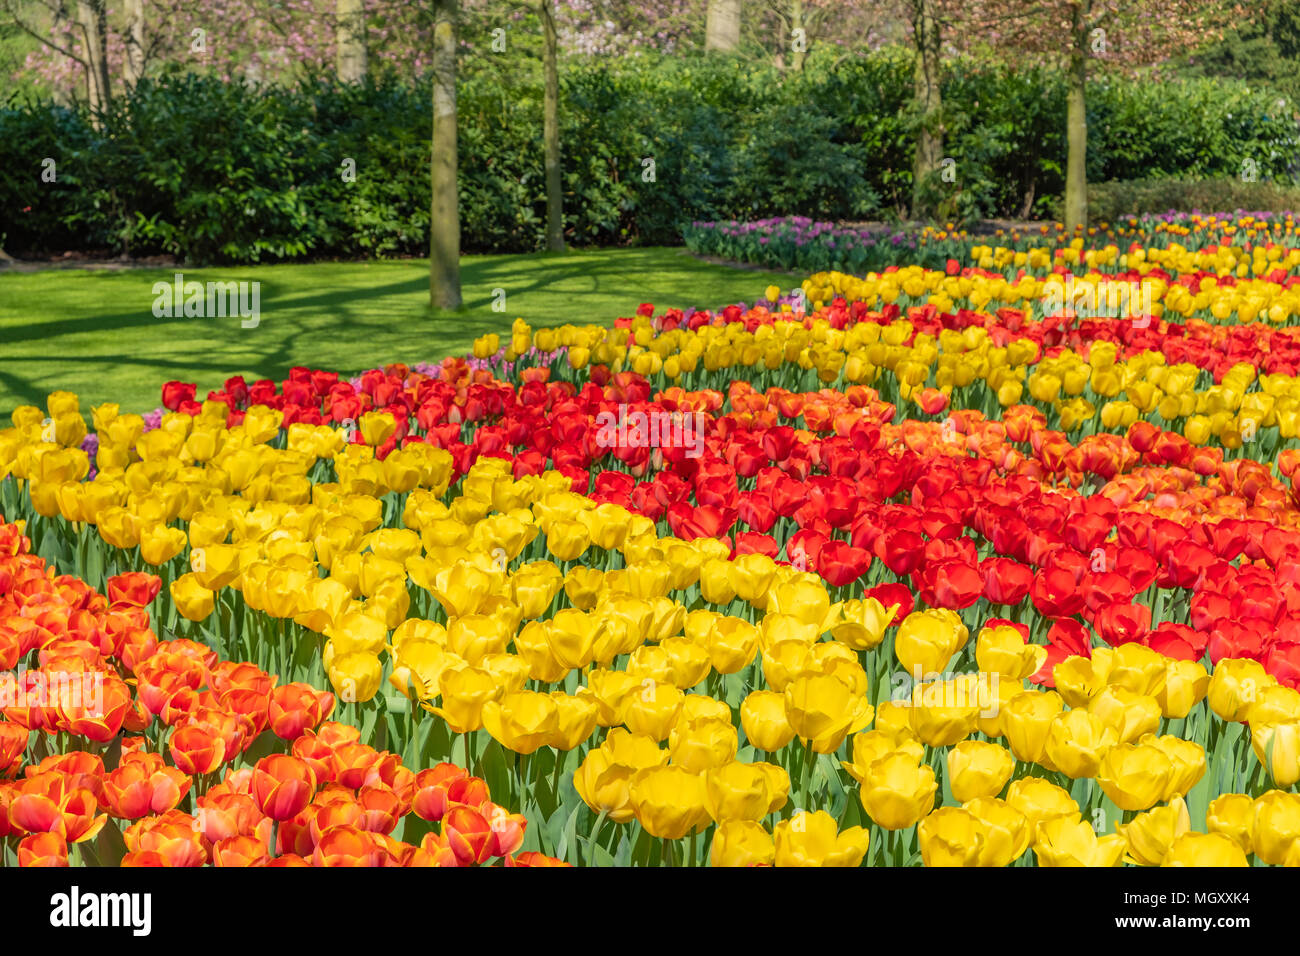 Keukenhof, connue comme le jardin de l'Europe, est situé à Lisse, South Holland aux Pays-Bas. Ouvert pour 8 semaines chaque année, elle attire plus de 800000 visiteurs Banque D'Images